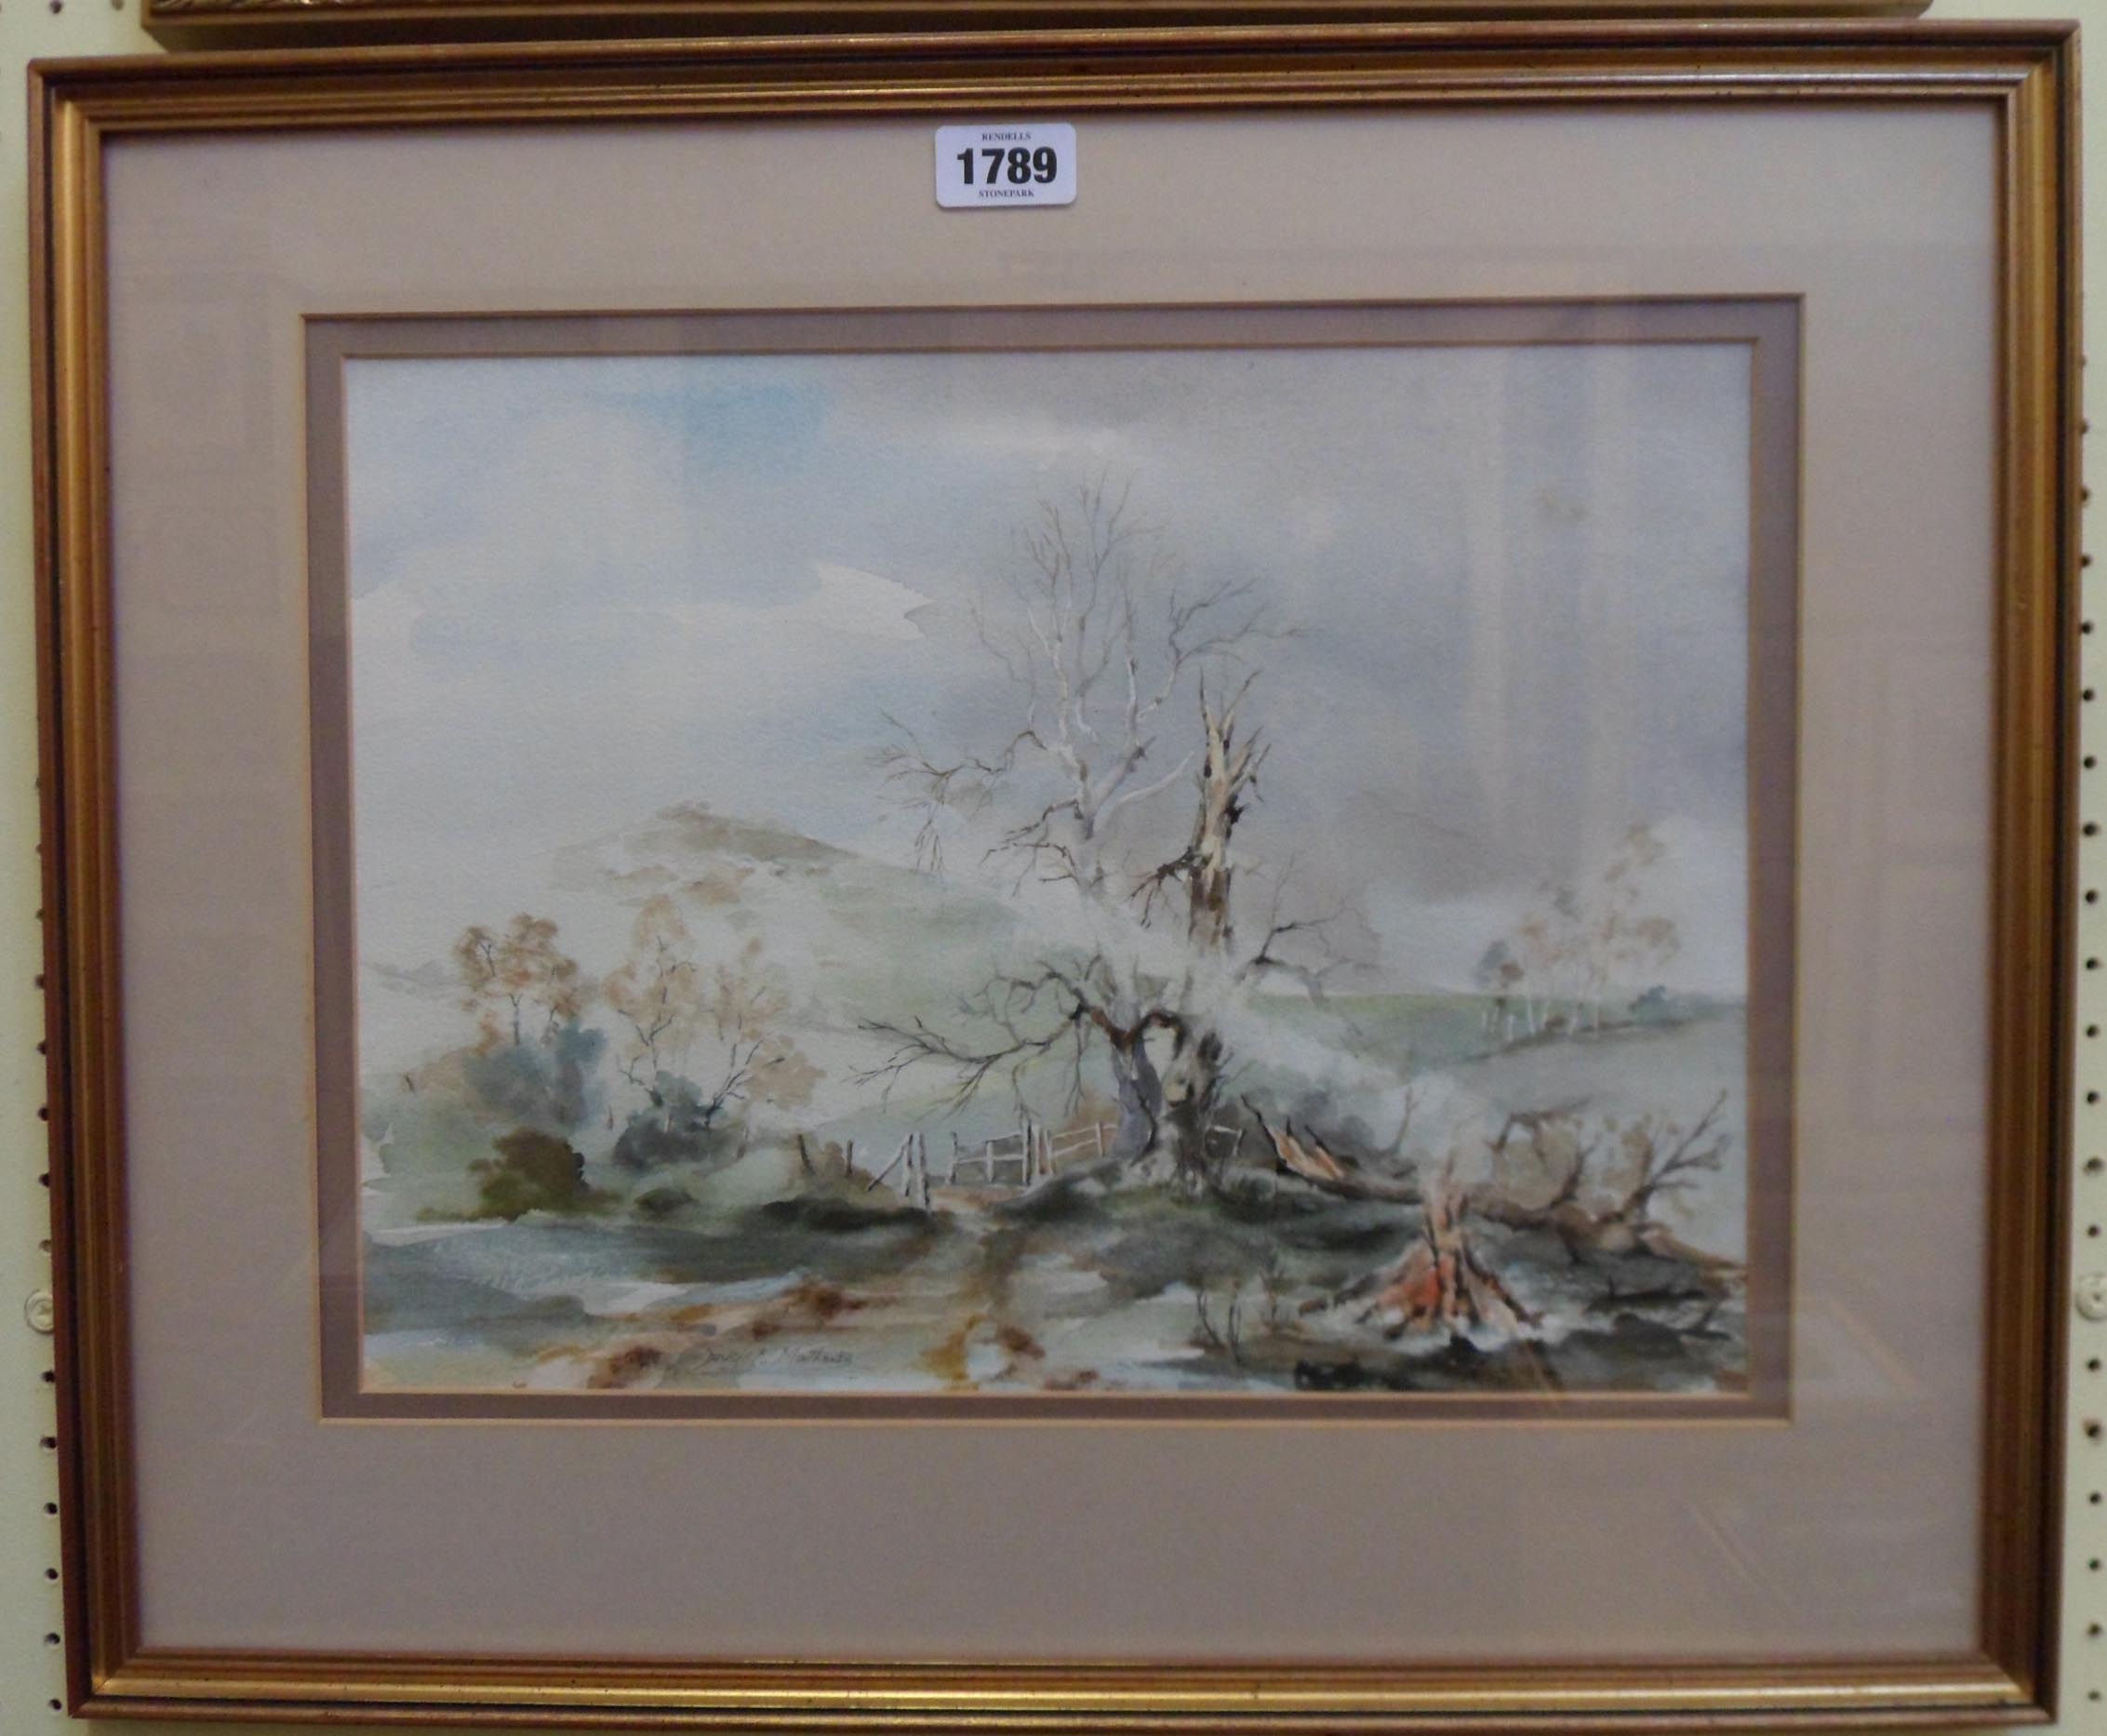 D. R. Matthews: a gilt framed watercolour entitled Aftermath, depicting a bleak landscape - signed